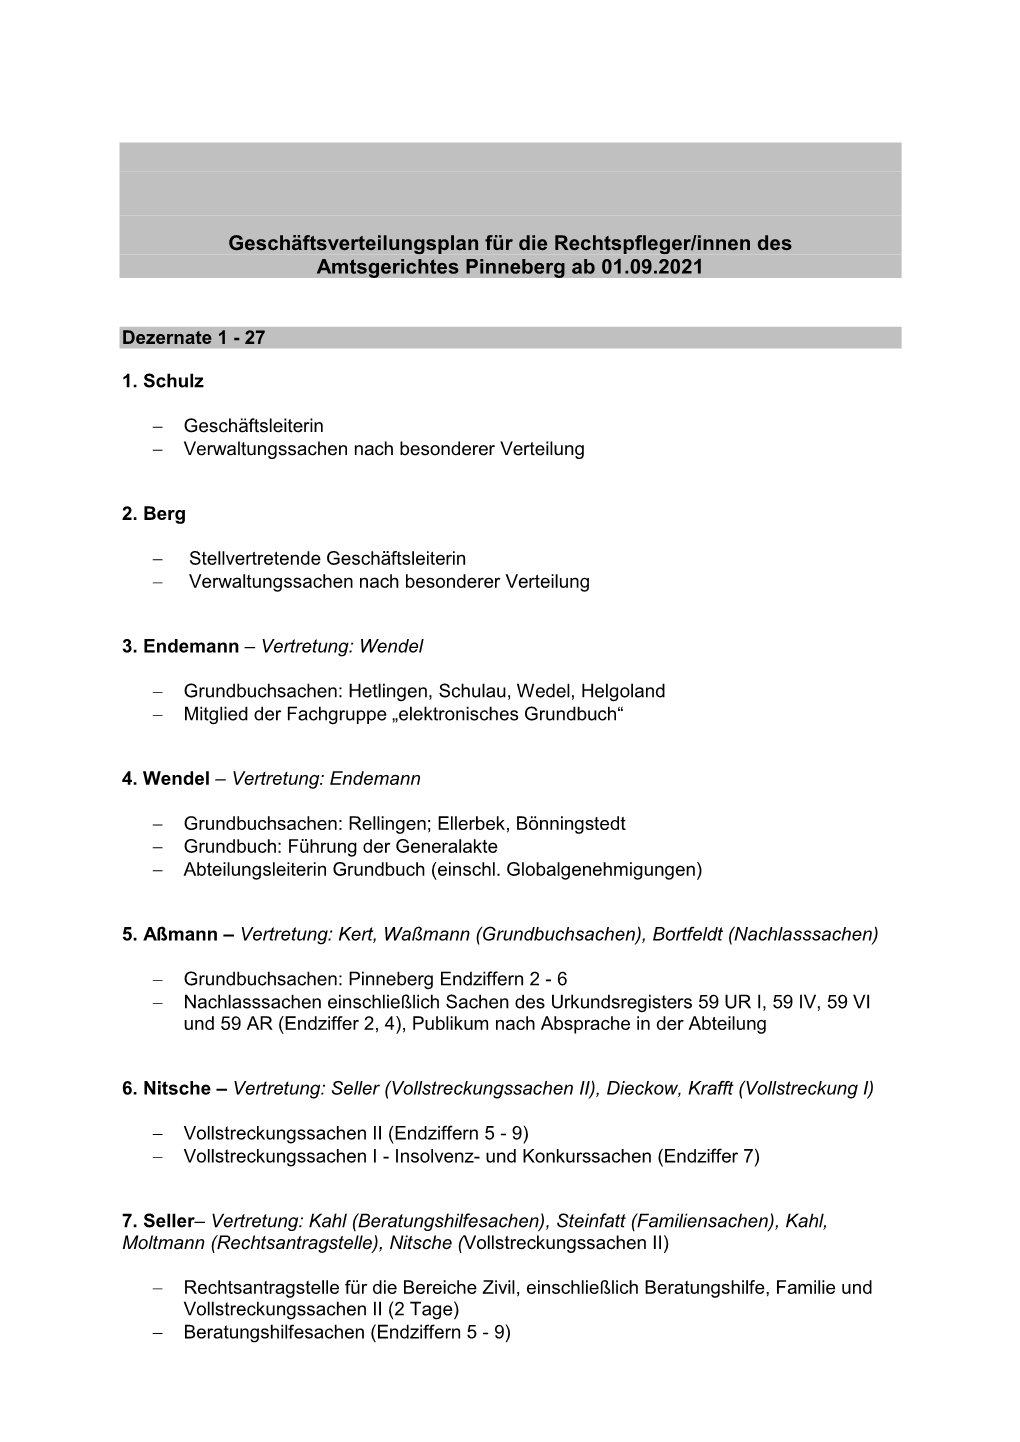 Geschäftsverteilungsplan Für Die Rechtspfleger/Innen Des Amtsgerichtes Pinneberg Ab 01.09.2021